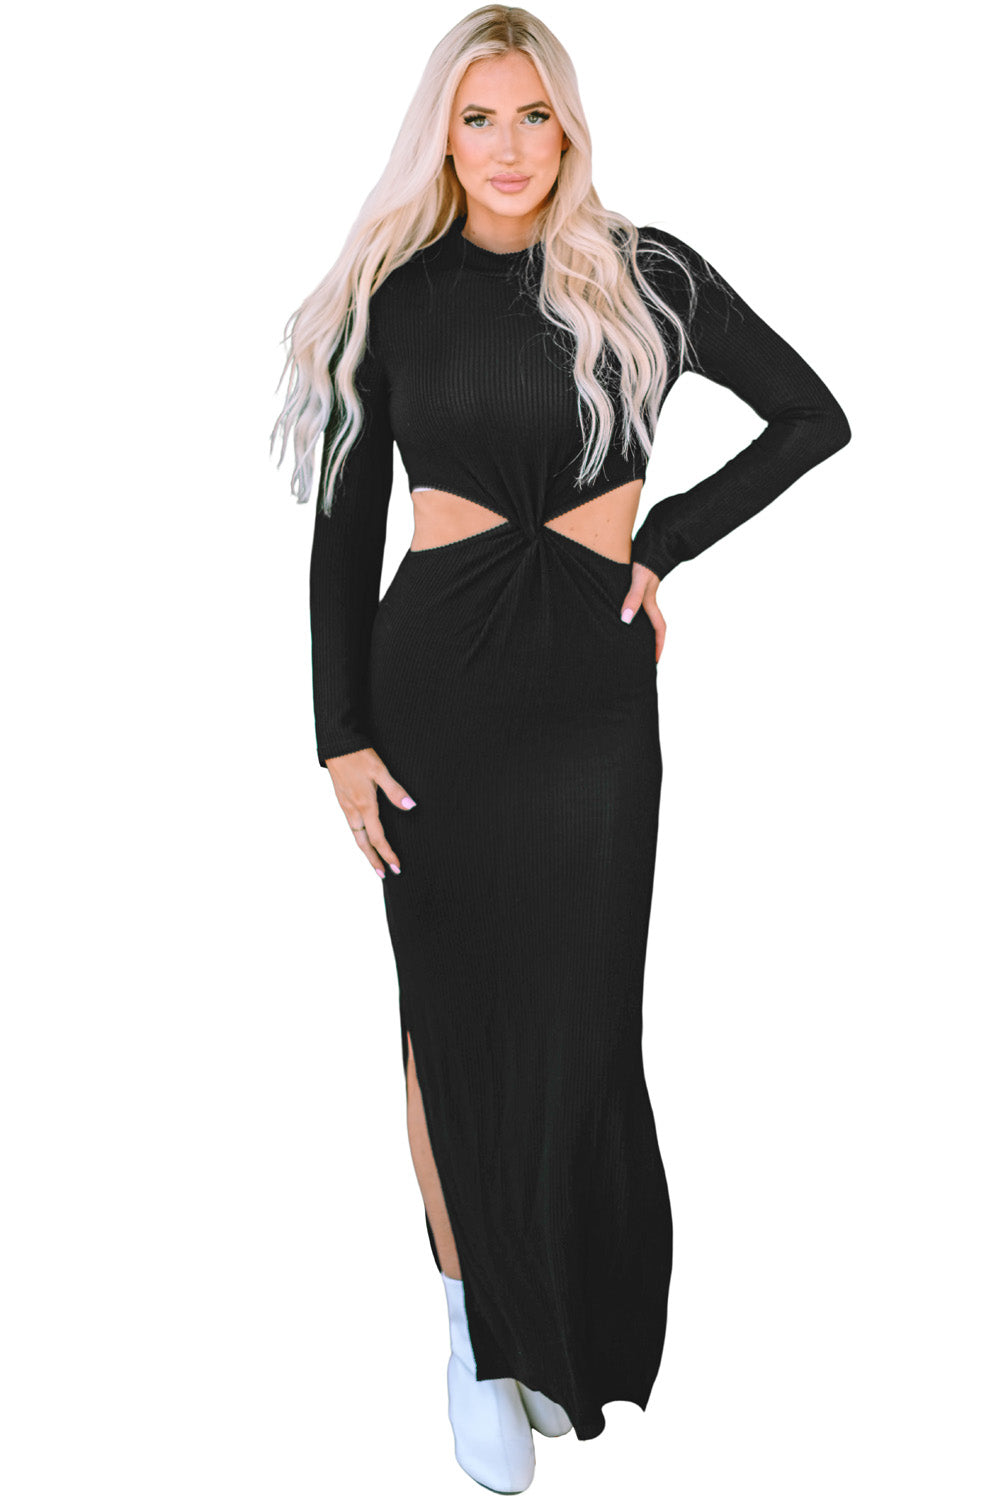 Schwarzes, geripptes, langärmliges Kleid mit verdrehtem Ausschnitt